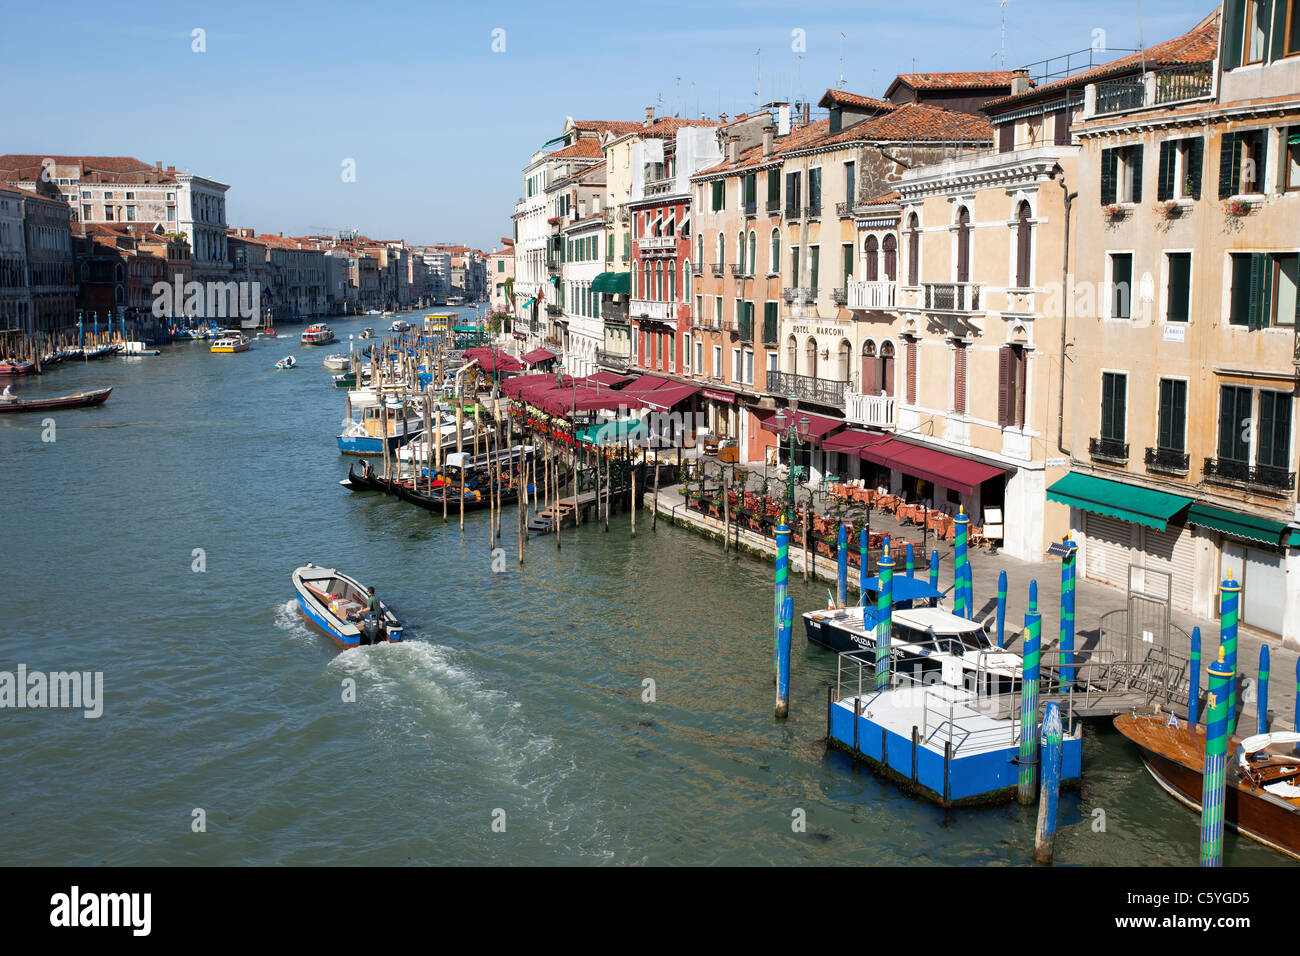 Le Grand Canal à Venise, en Italie avec l'eau, vaporettos taxis, bateaux, les touristes et les hôtels qui bordent le canal. Banque D'Images